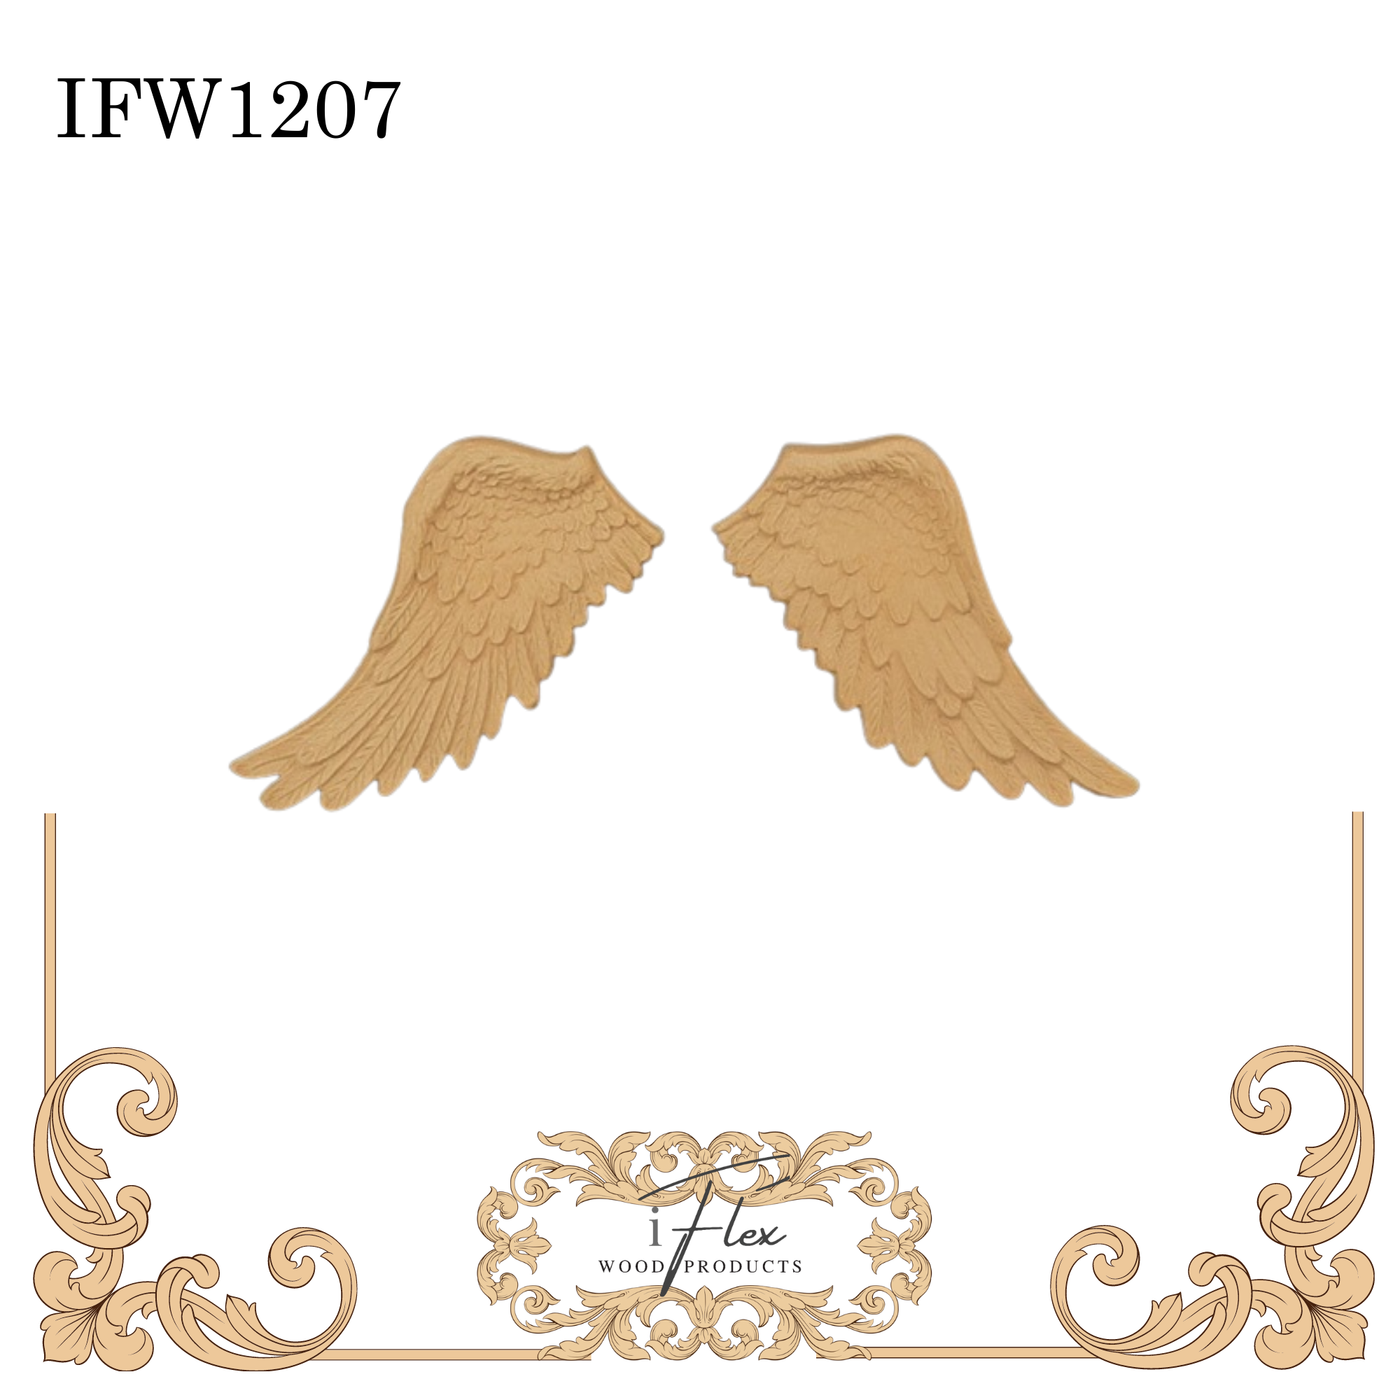 IFW 1207